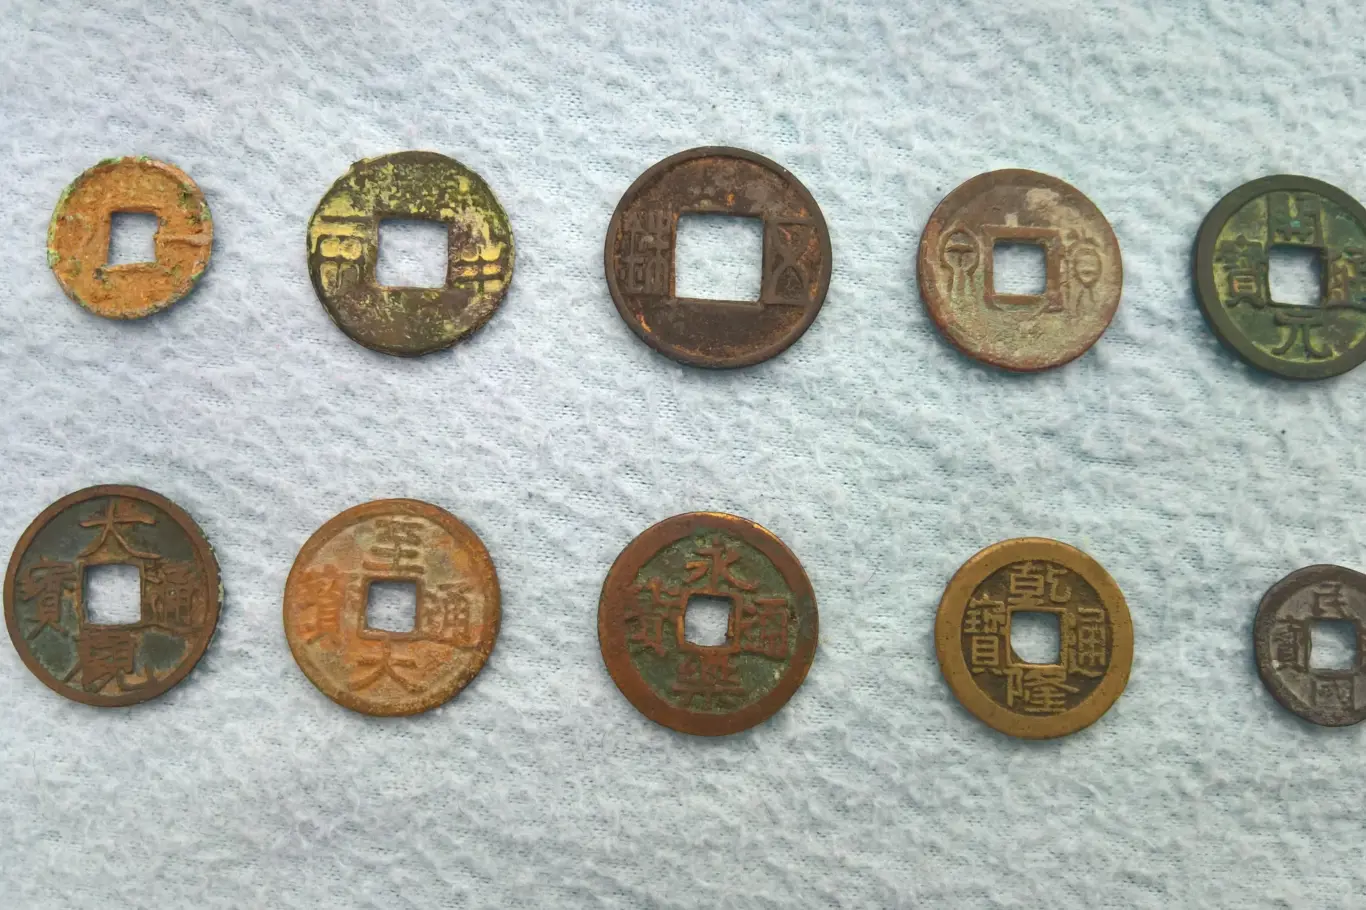 Čínské hotovostní mince všech významných dynastií čínské historie a Čínské republiky.